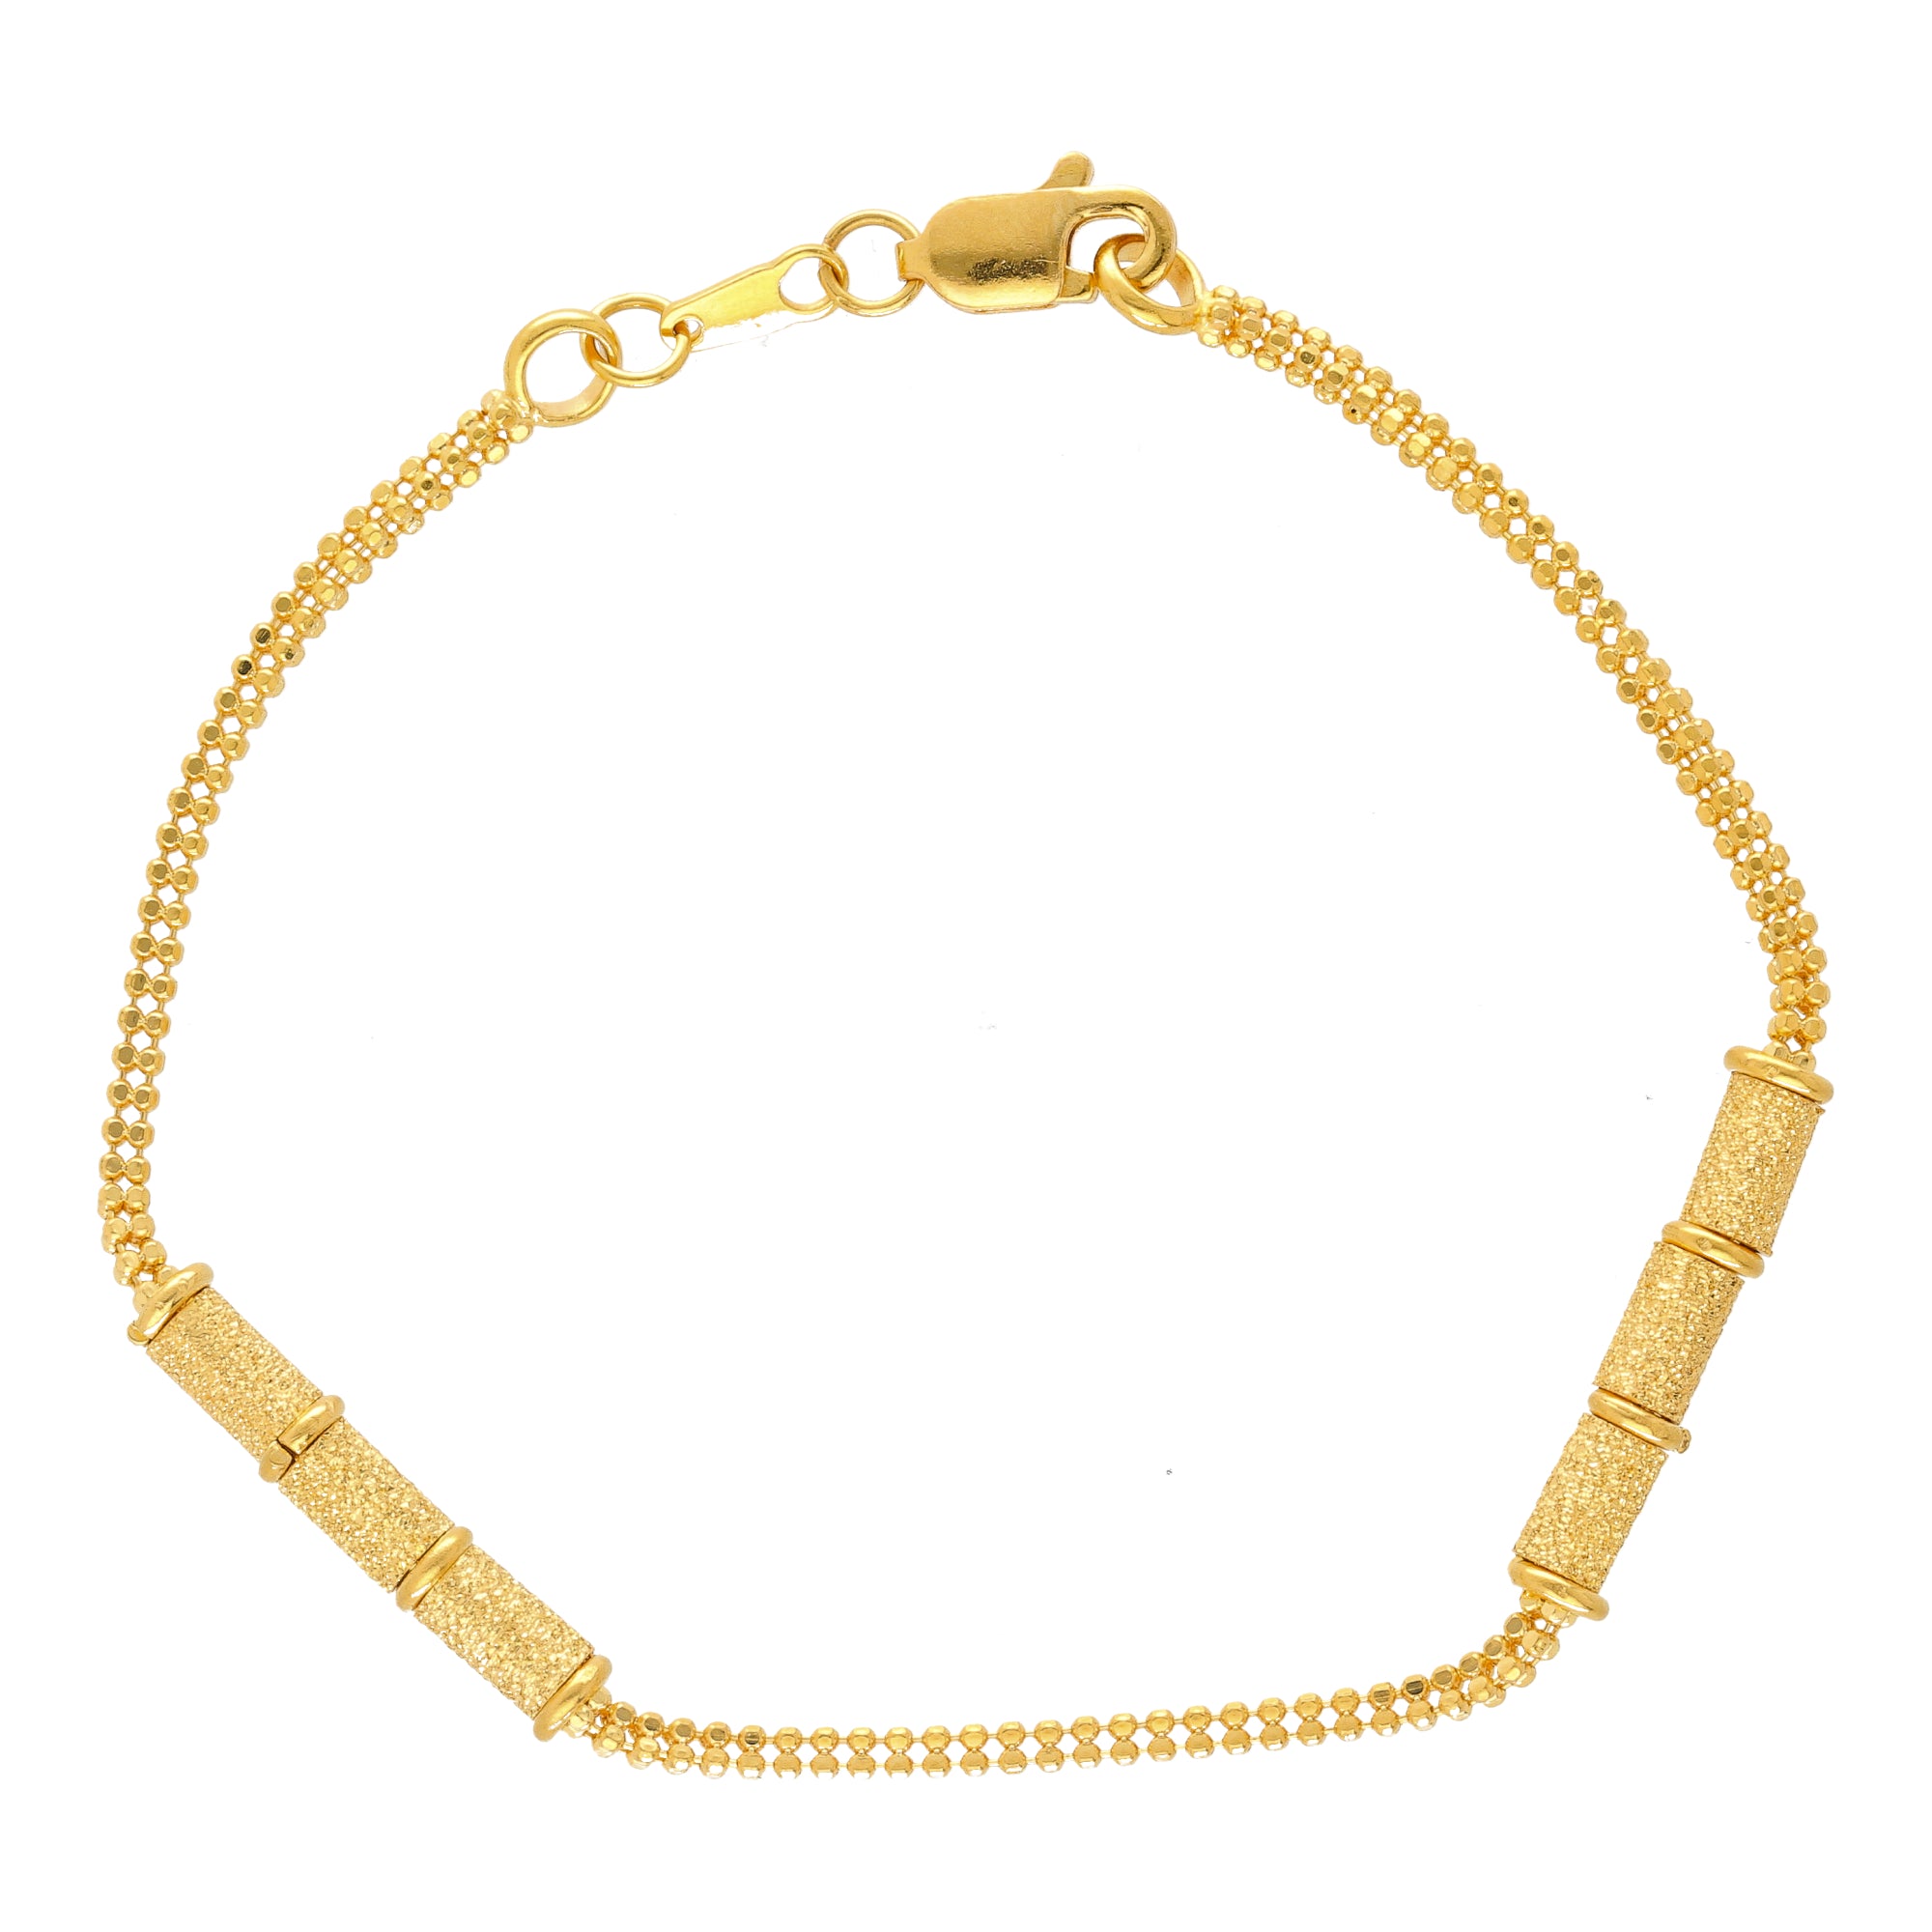 Buy quality 22k Gold Ladies Bracelet in Ahmedabad